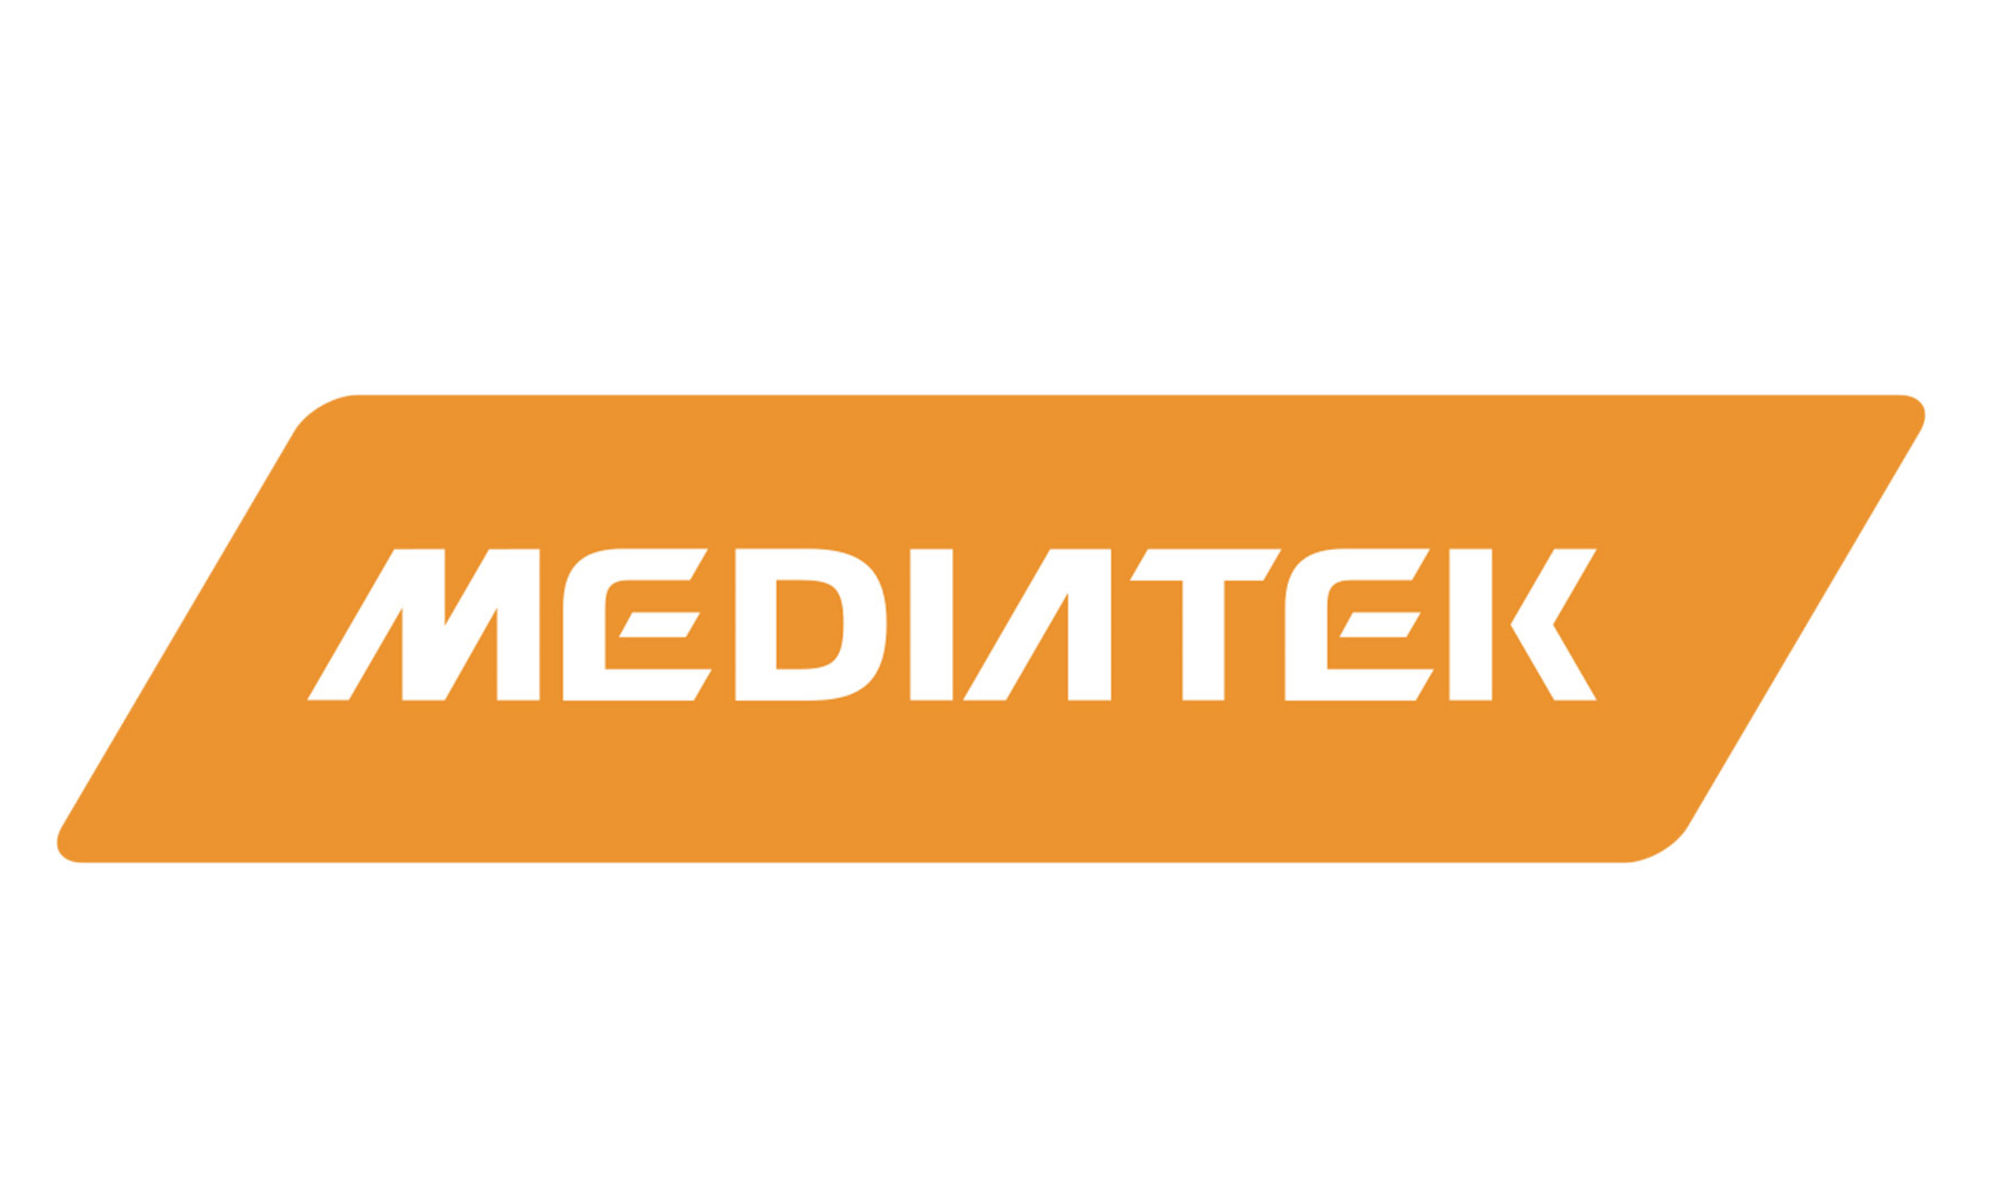 MediaTekのロゴ